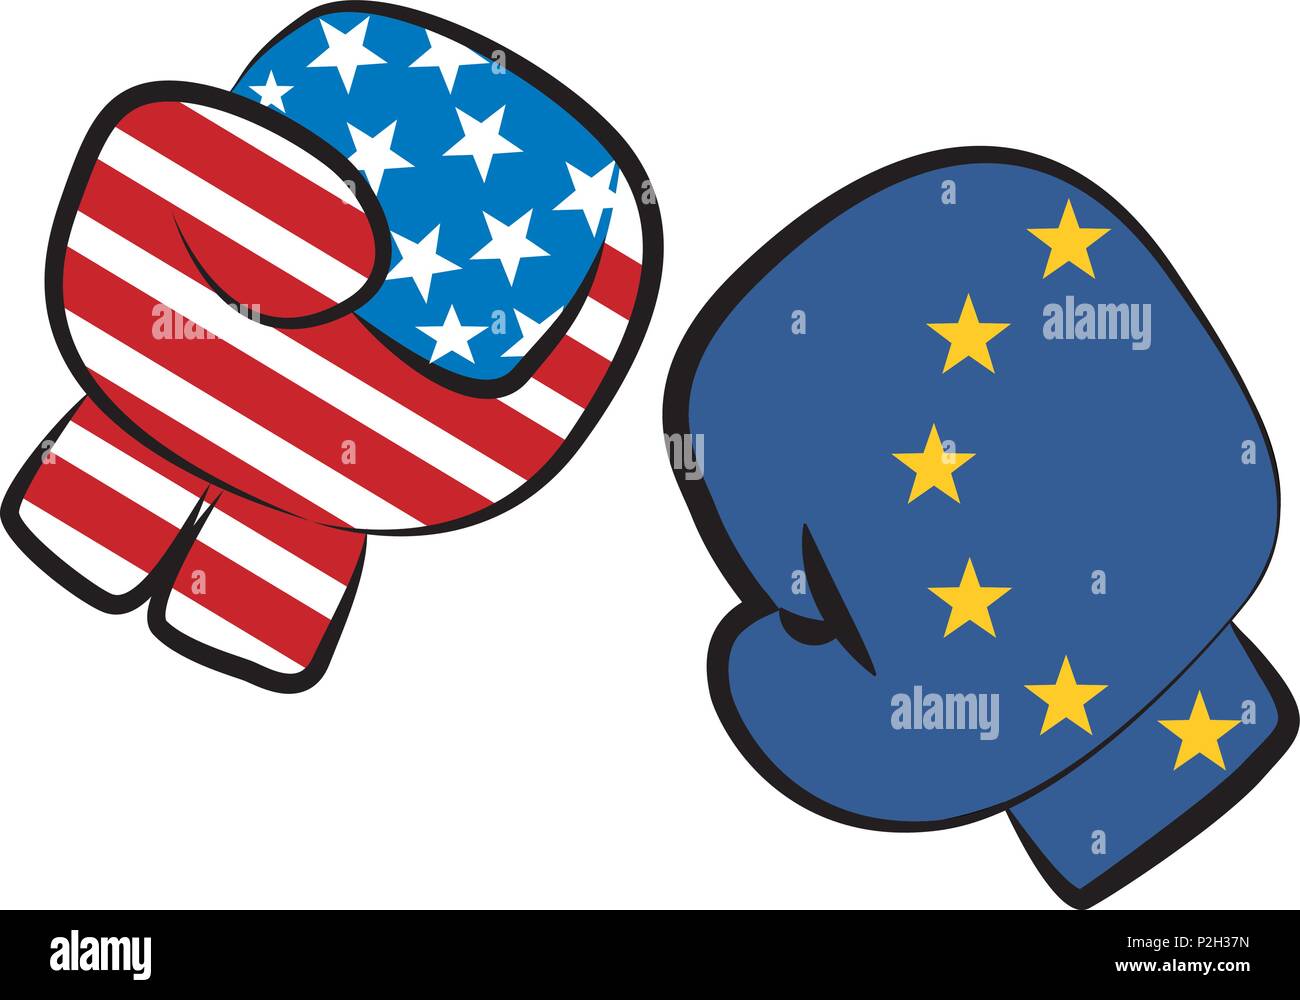 USA Europa Handelskrieg confict durch einen Boxkampf mit USA und Europa Flaggen in Boxhandschuhe miteinander kämpfen, isoliert auf weißem Ill. Stock Vektor